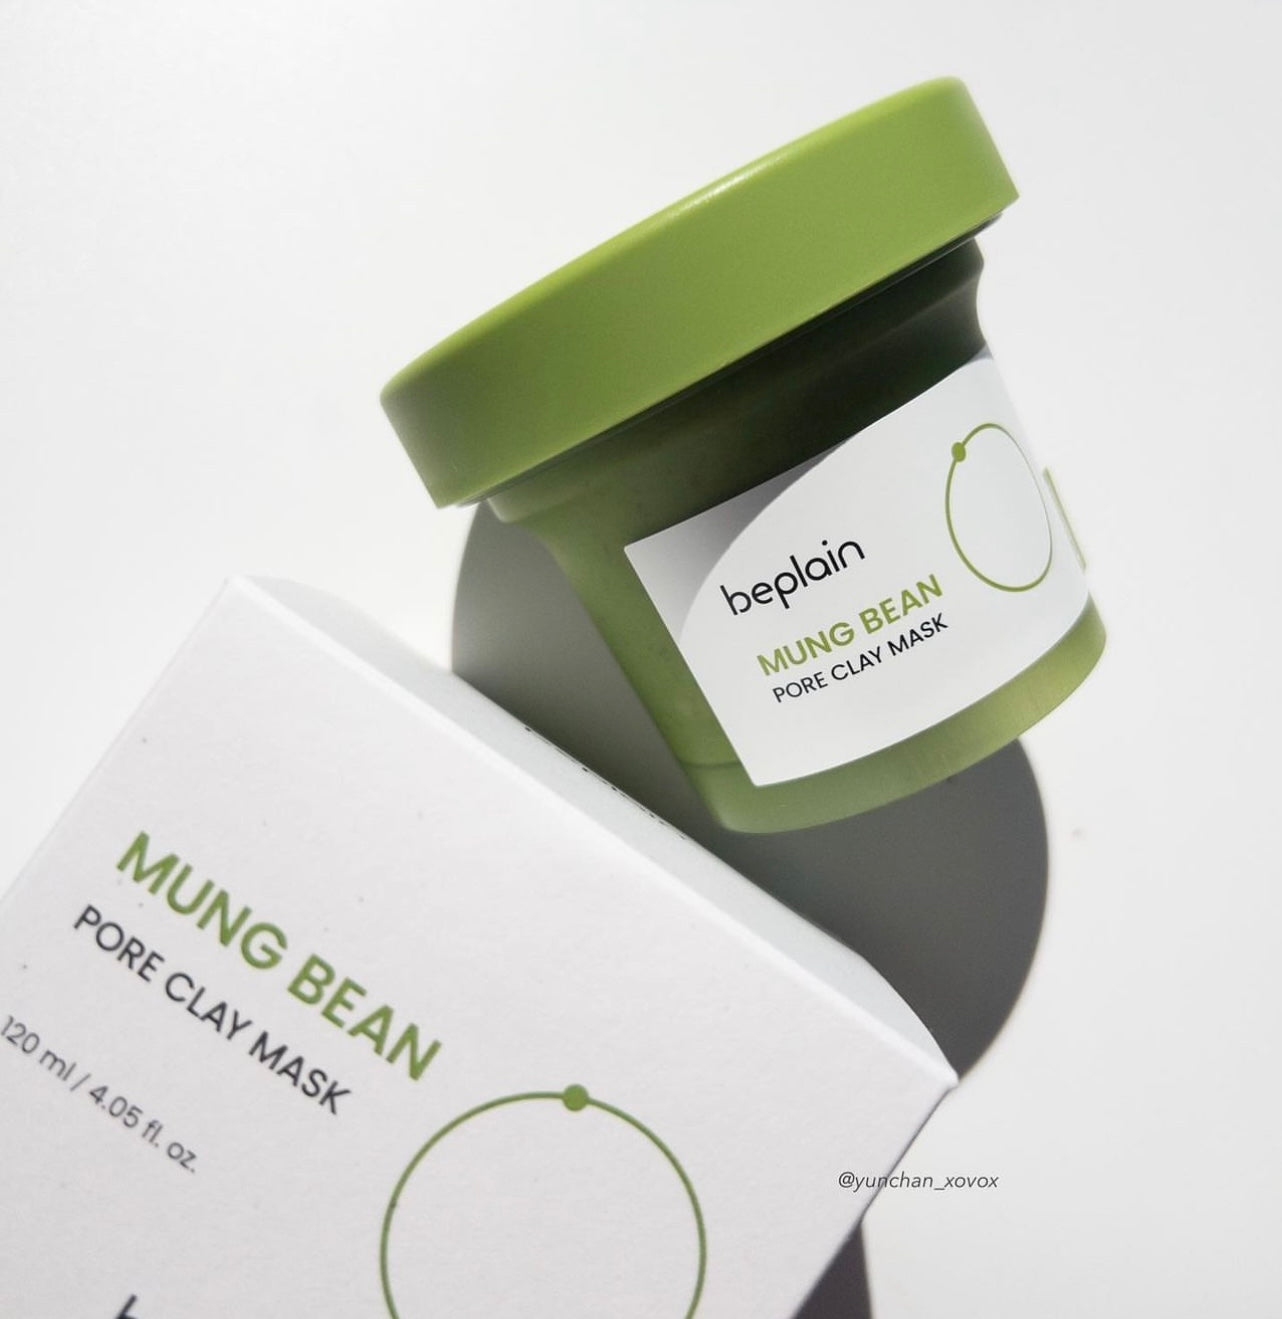 三分鐘淨化毛孔|Beplain Mung Bean Pore Clay Mask  |綠豆酵素毛孔清潔泥膜120ml | Leo 同 beplain 共同設計開發💫